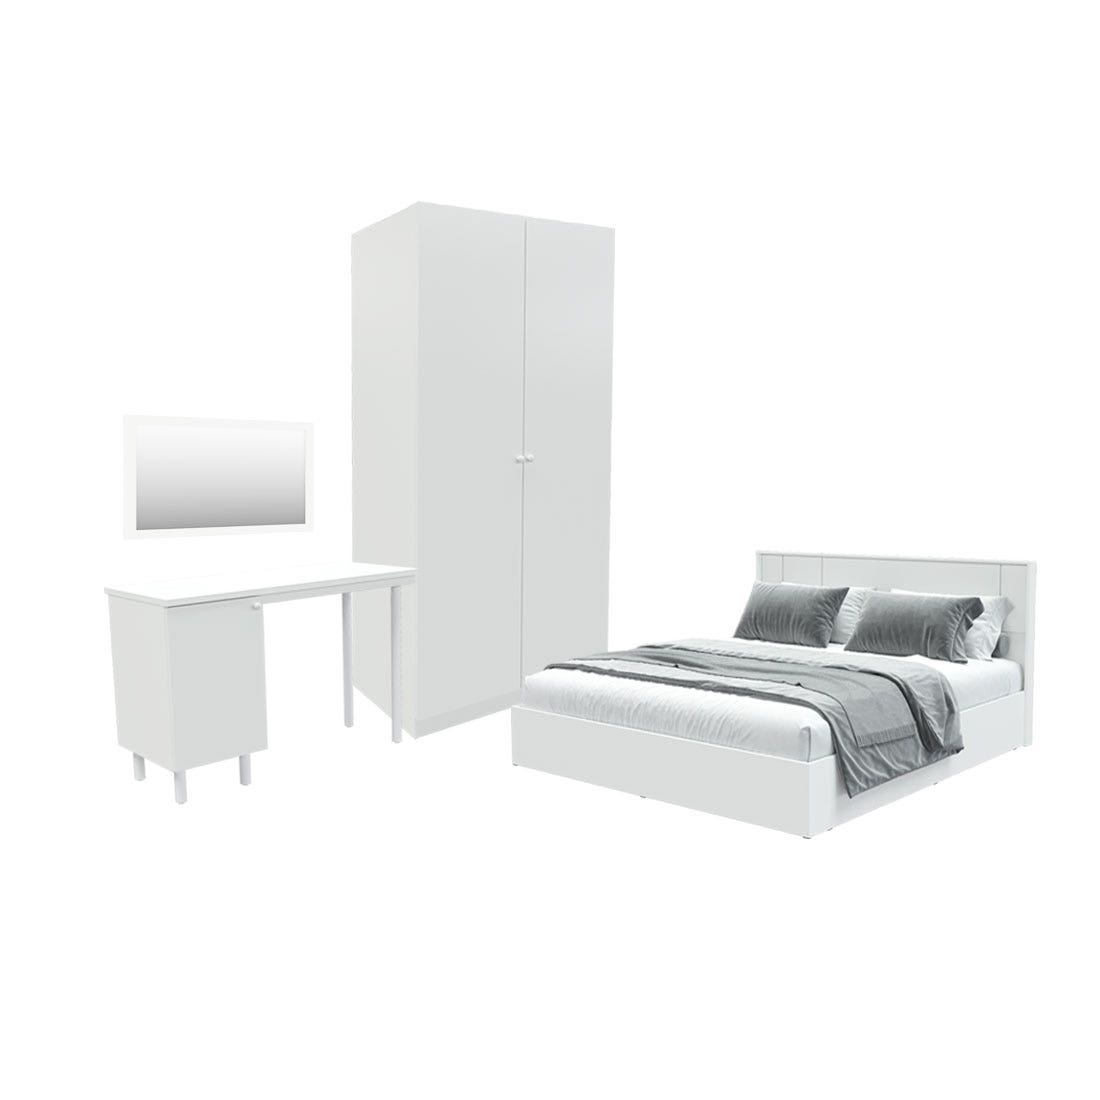 ชุดห้องนอน ขนาด 5 ฟุต รุ่น Pearliz และ ตู้ Blox ขนาด 100 ซม. พร้อมโต๊ะทำงาน สีขาว มิดกรอส01